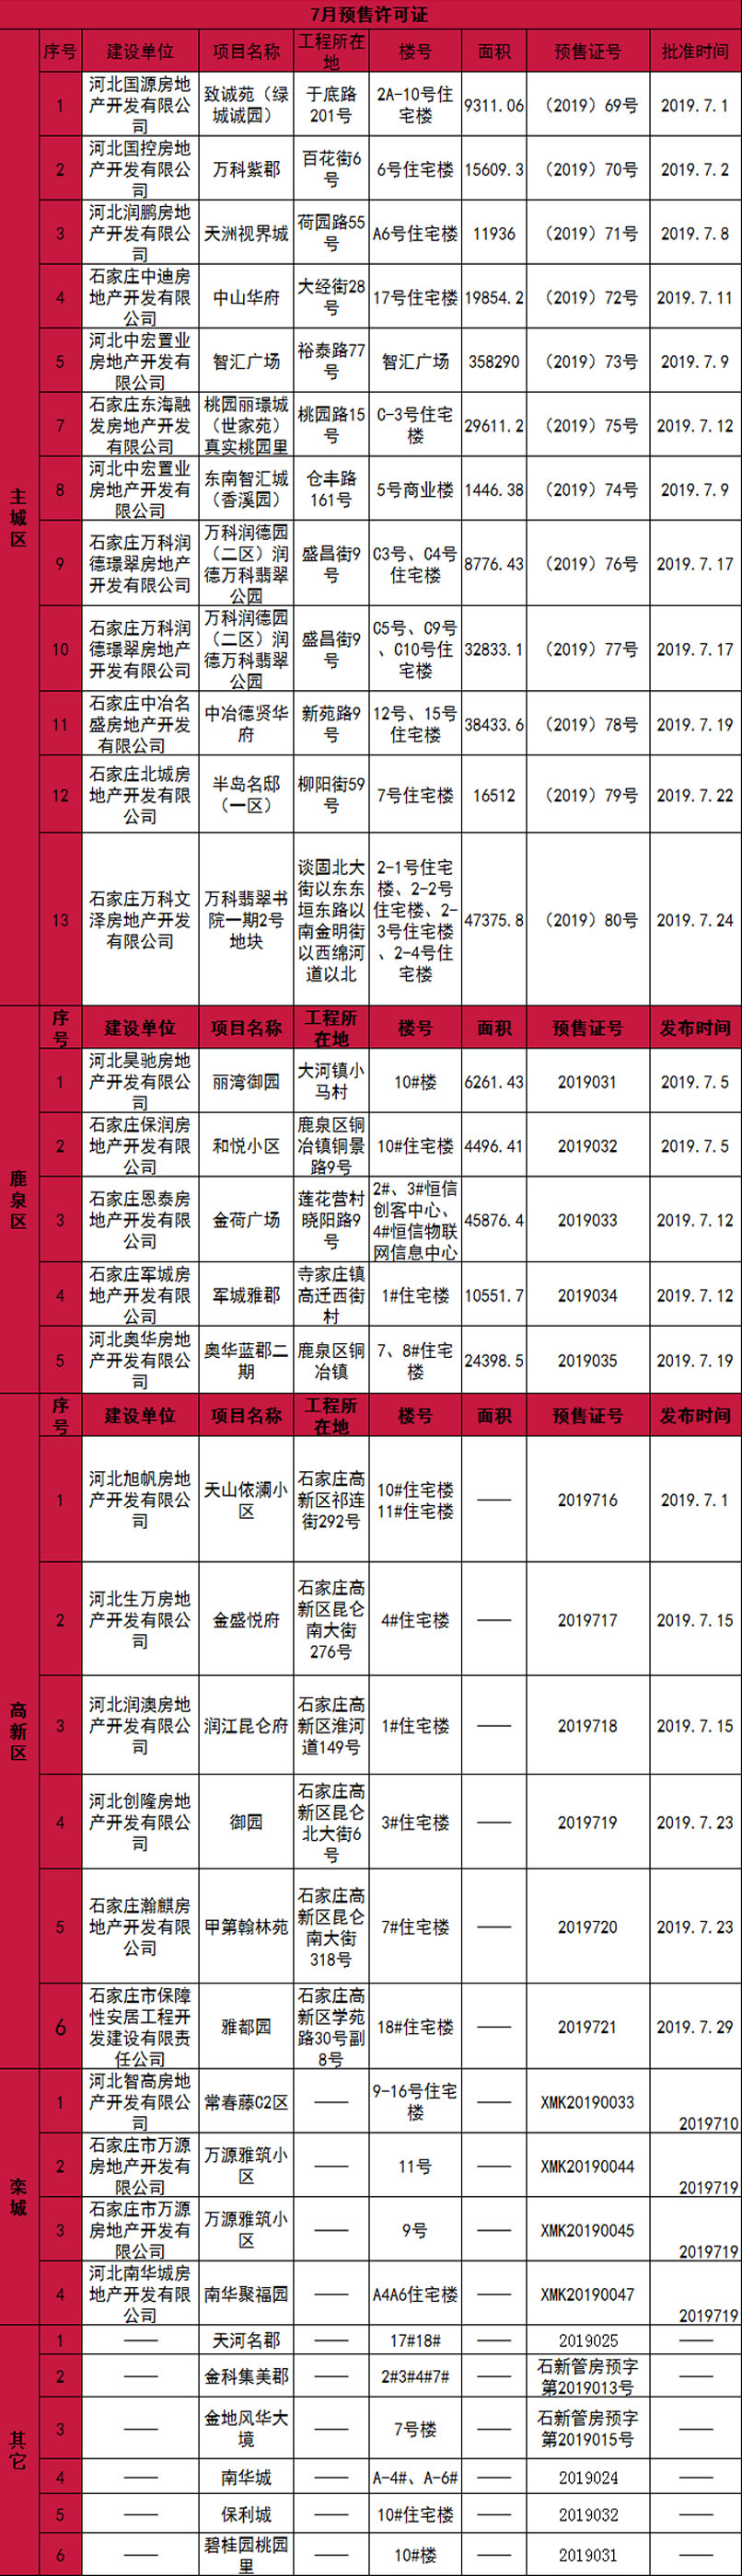 证件公示:石家庄7月34张预售证获批 -中国网地产